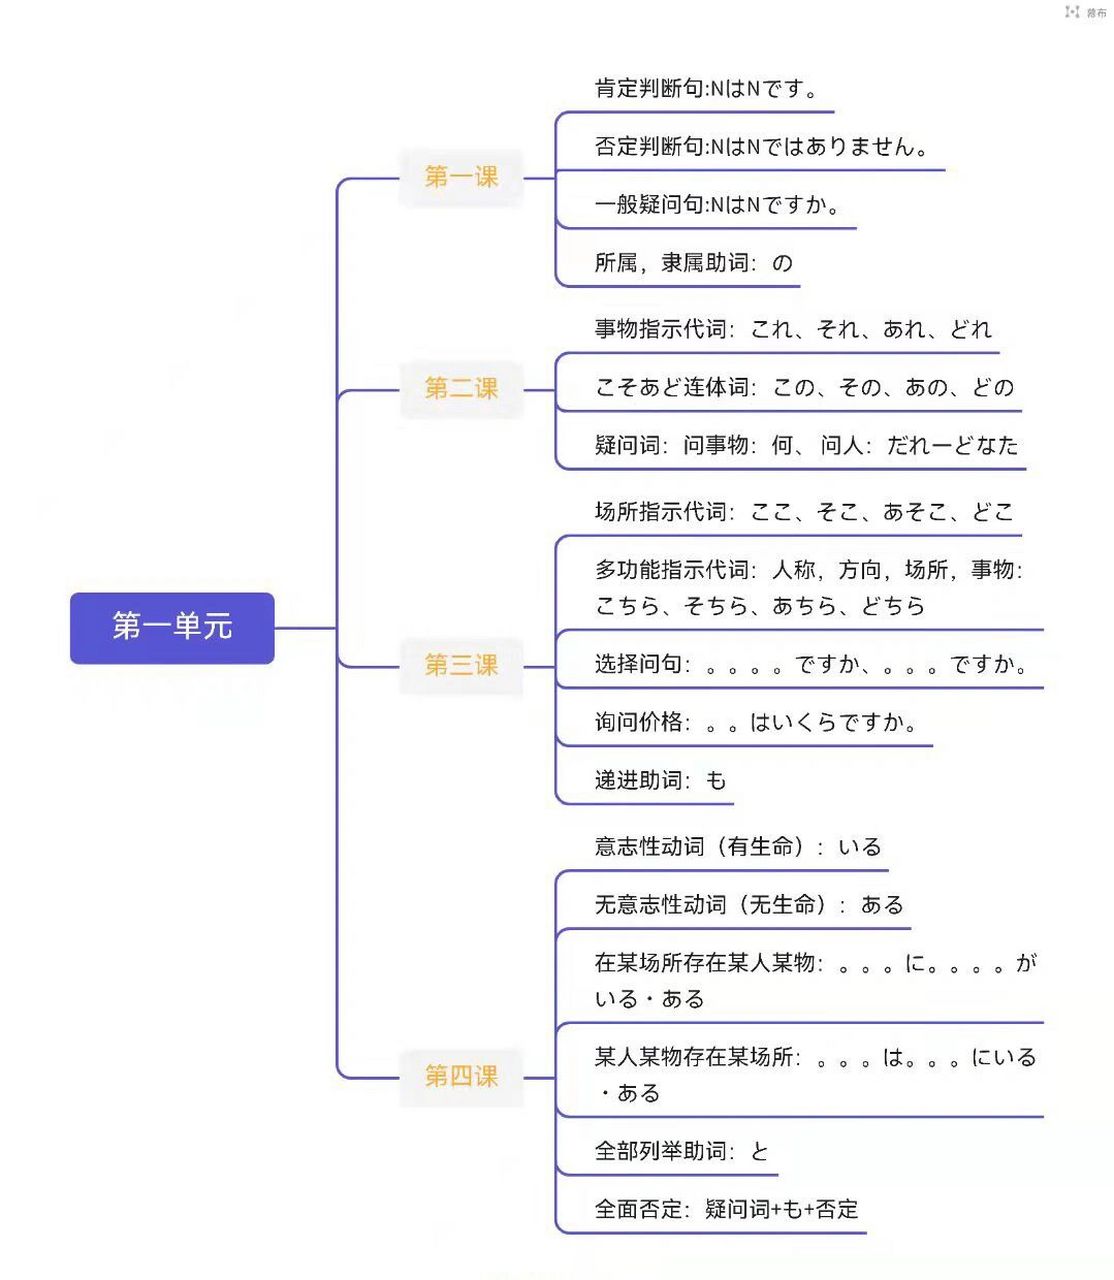 标准日本语初级上下册思维导图 标日初级上下册思维导图~ 1